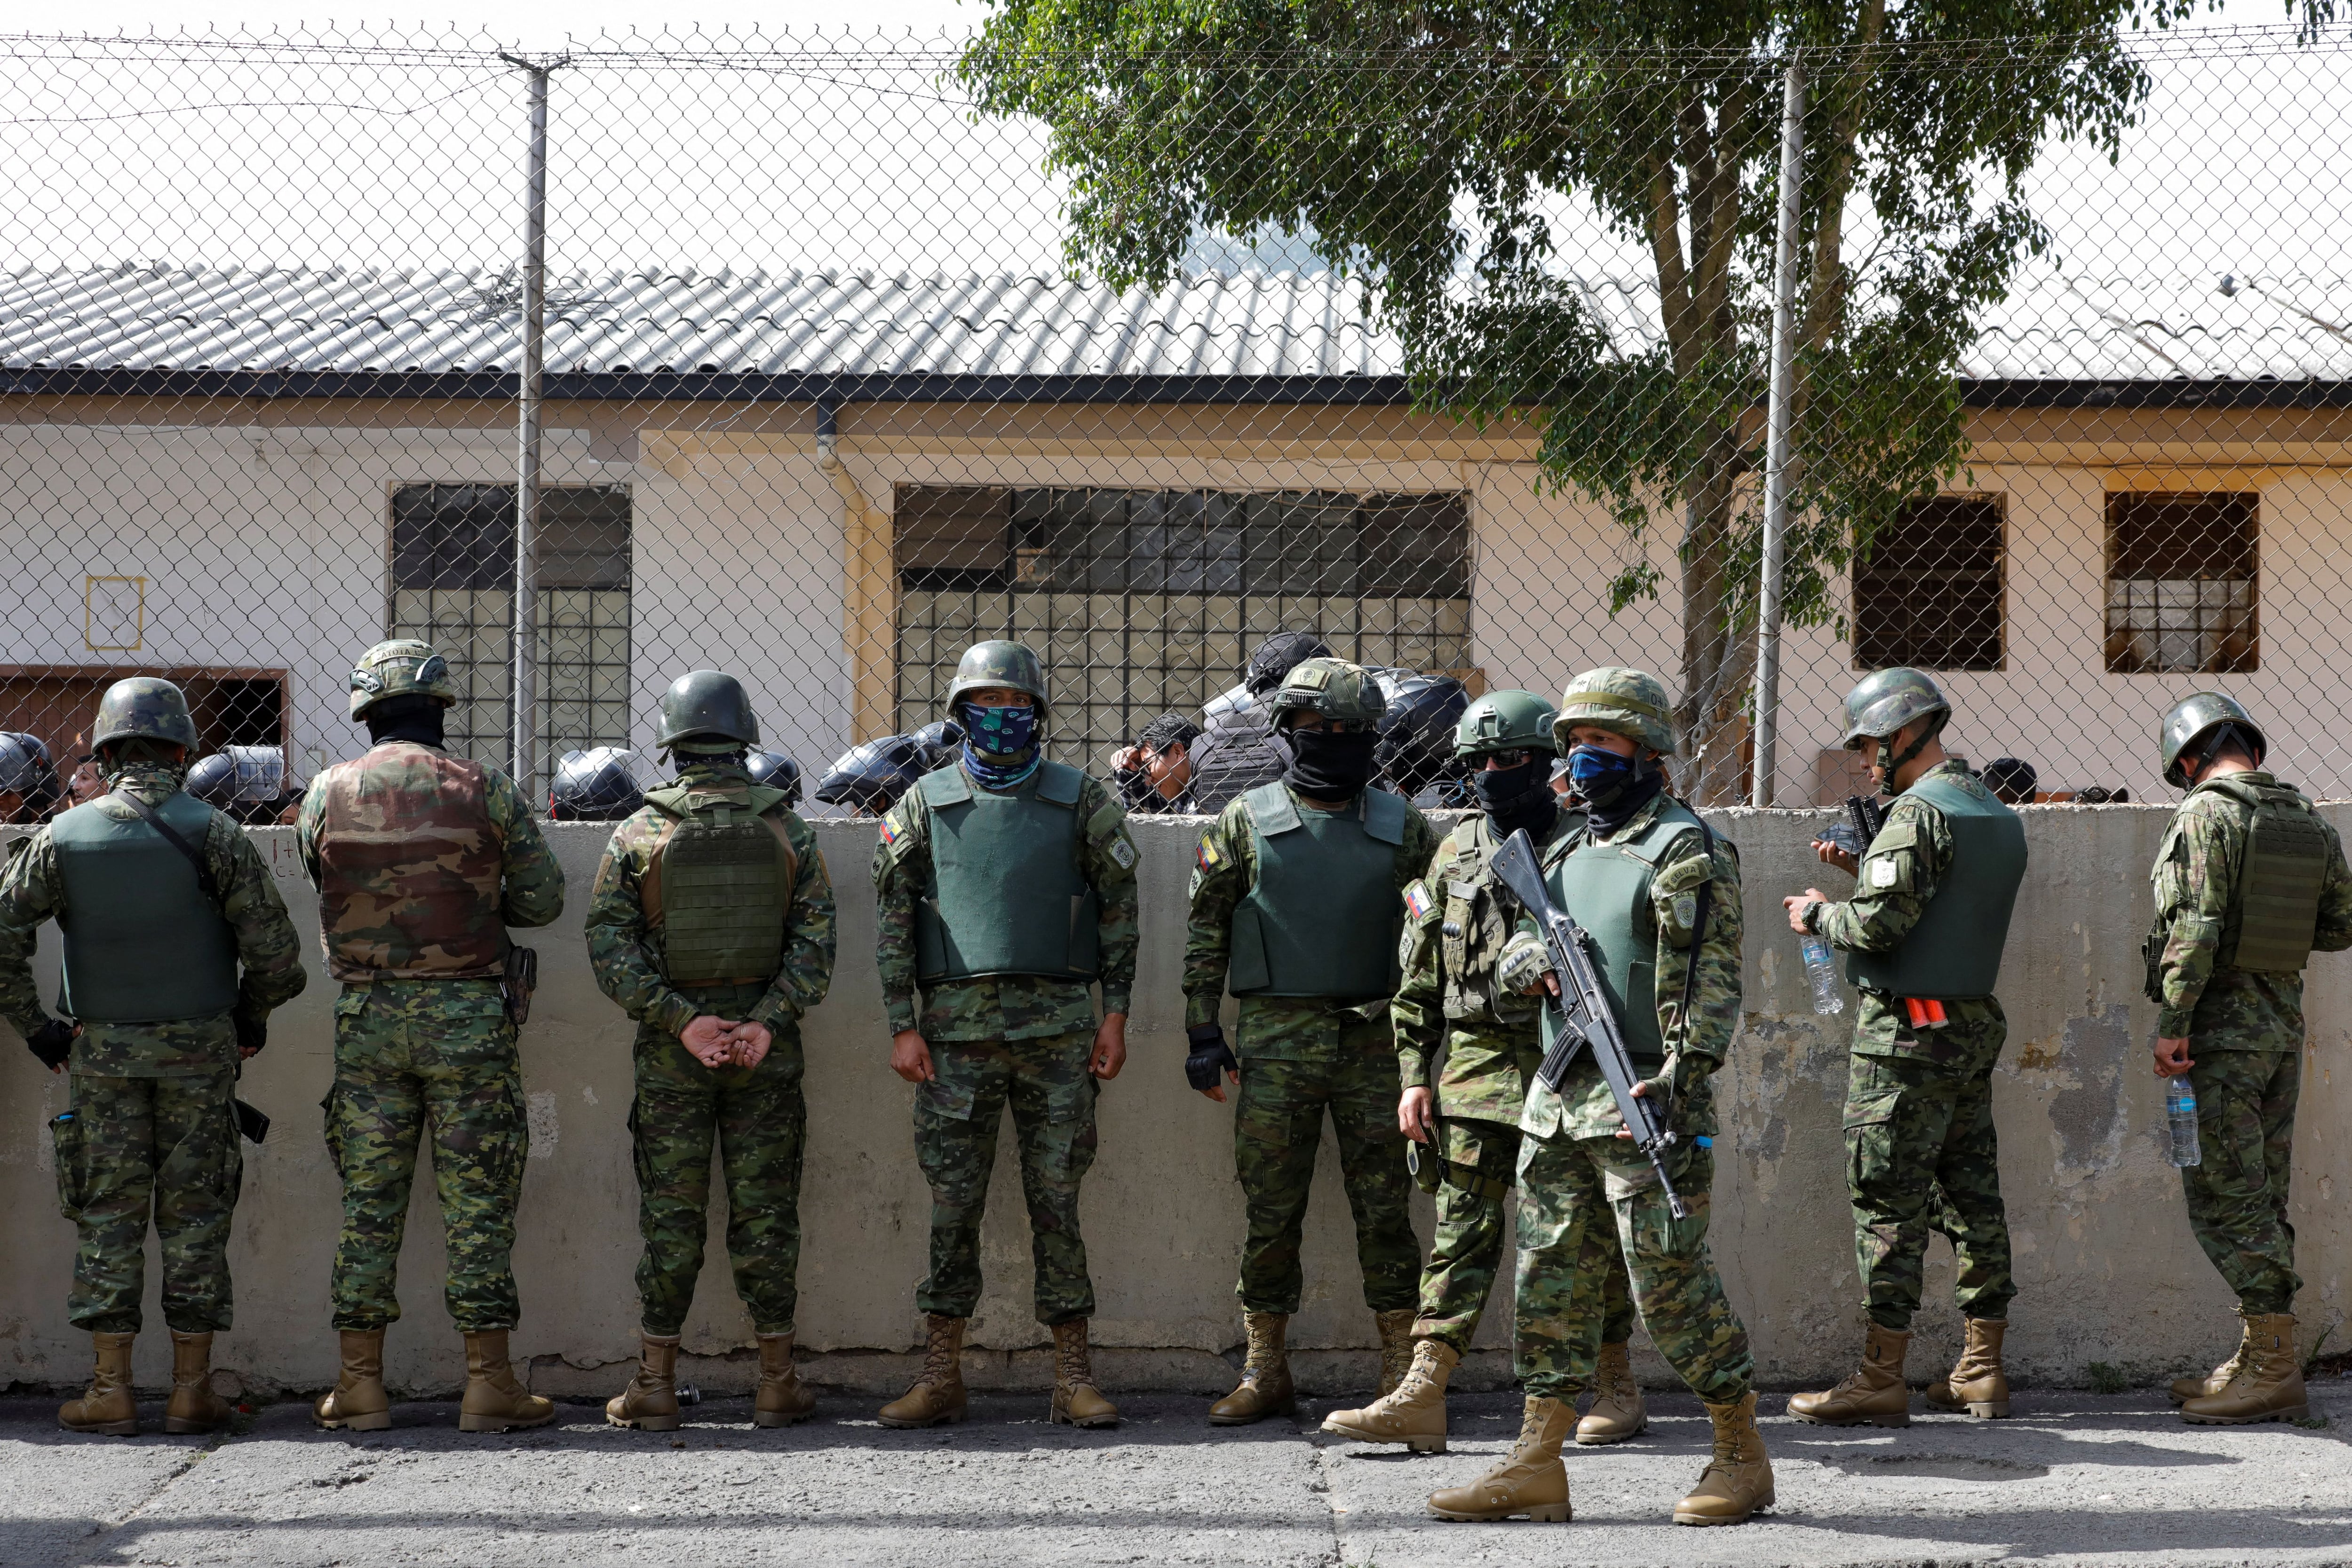 Los diez detenidos, entre ellos un colombiano, ingresaron en prisión provisional por orden judicial. (REUTERS)